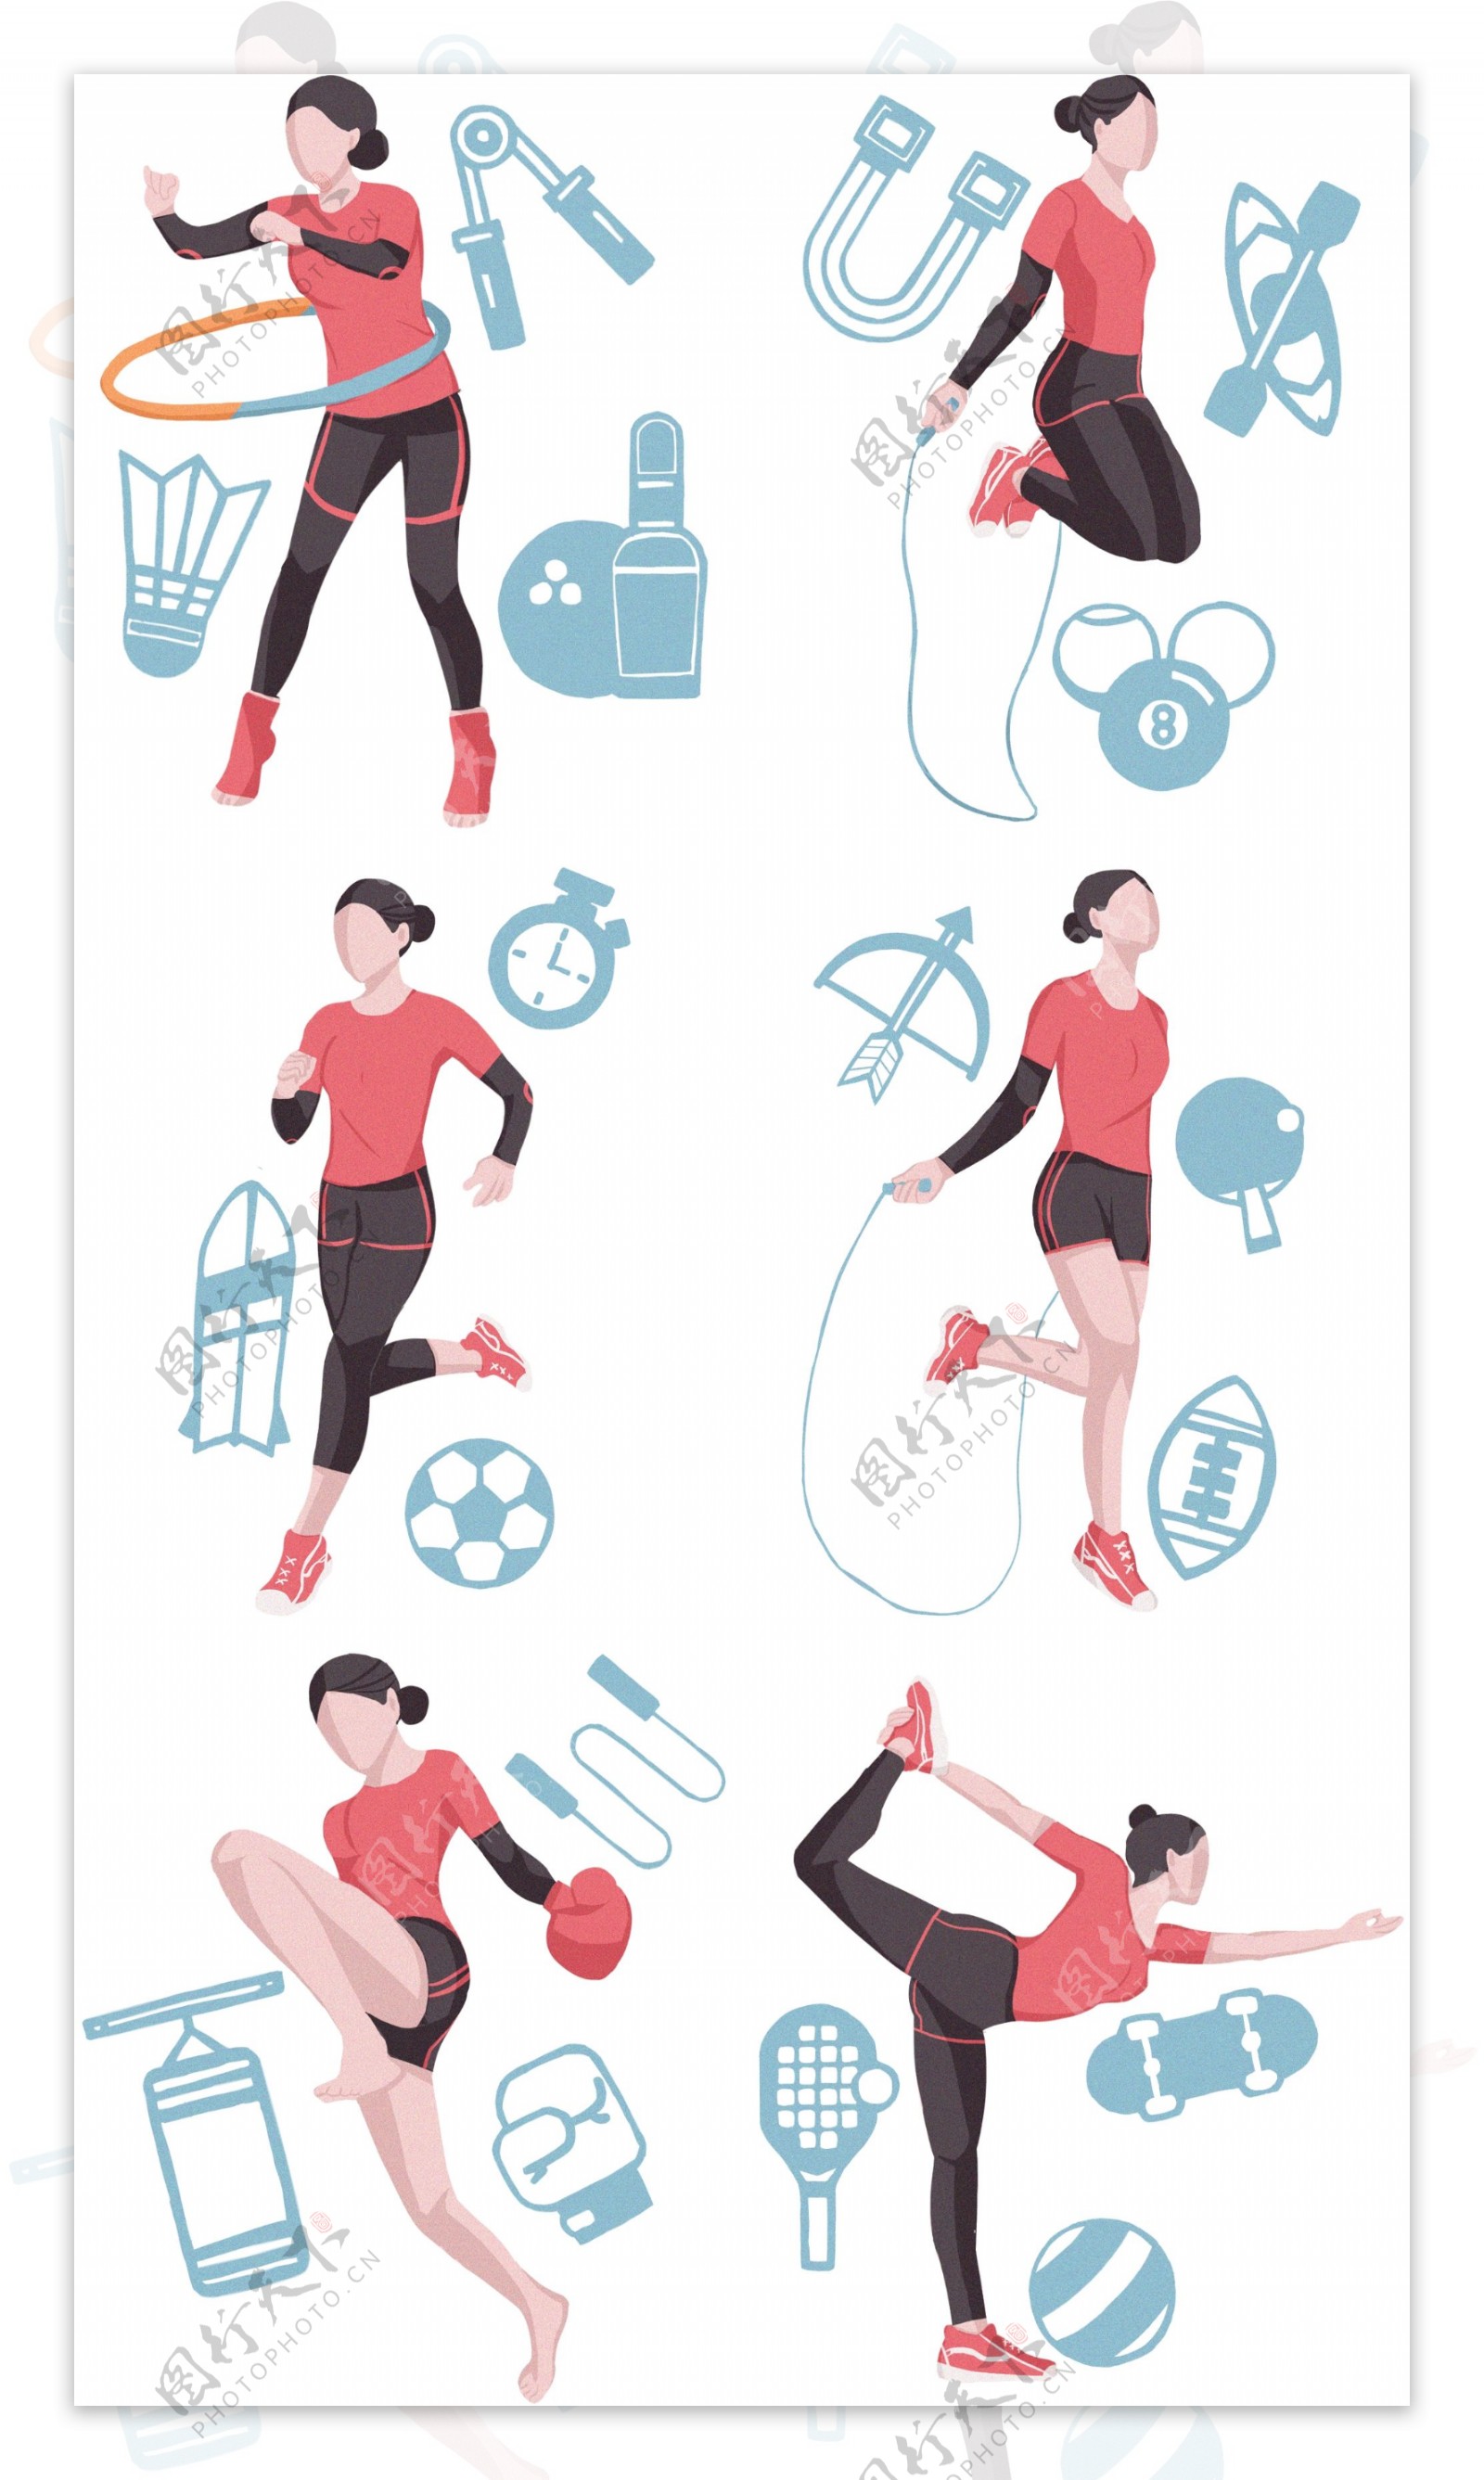 锻炼运动合集插画